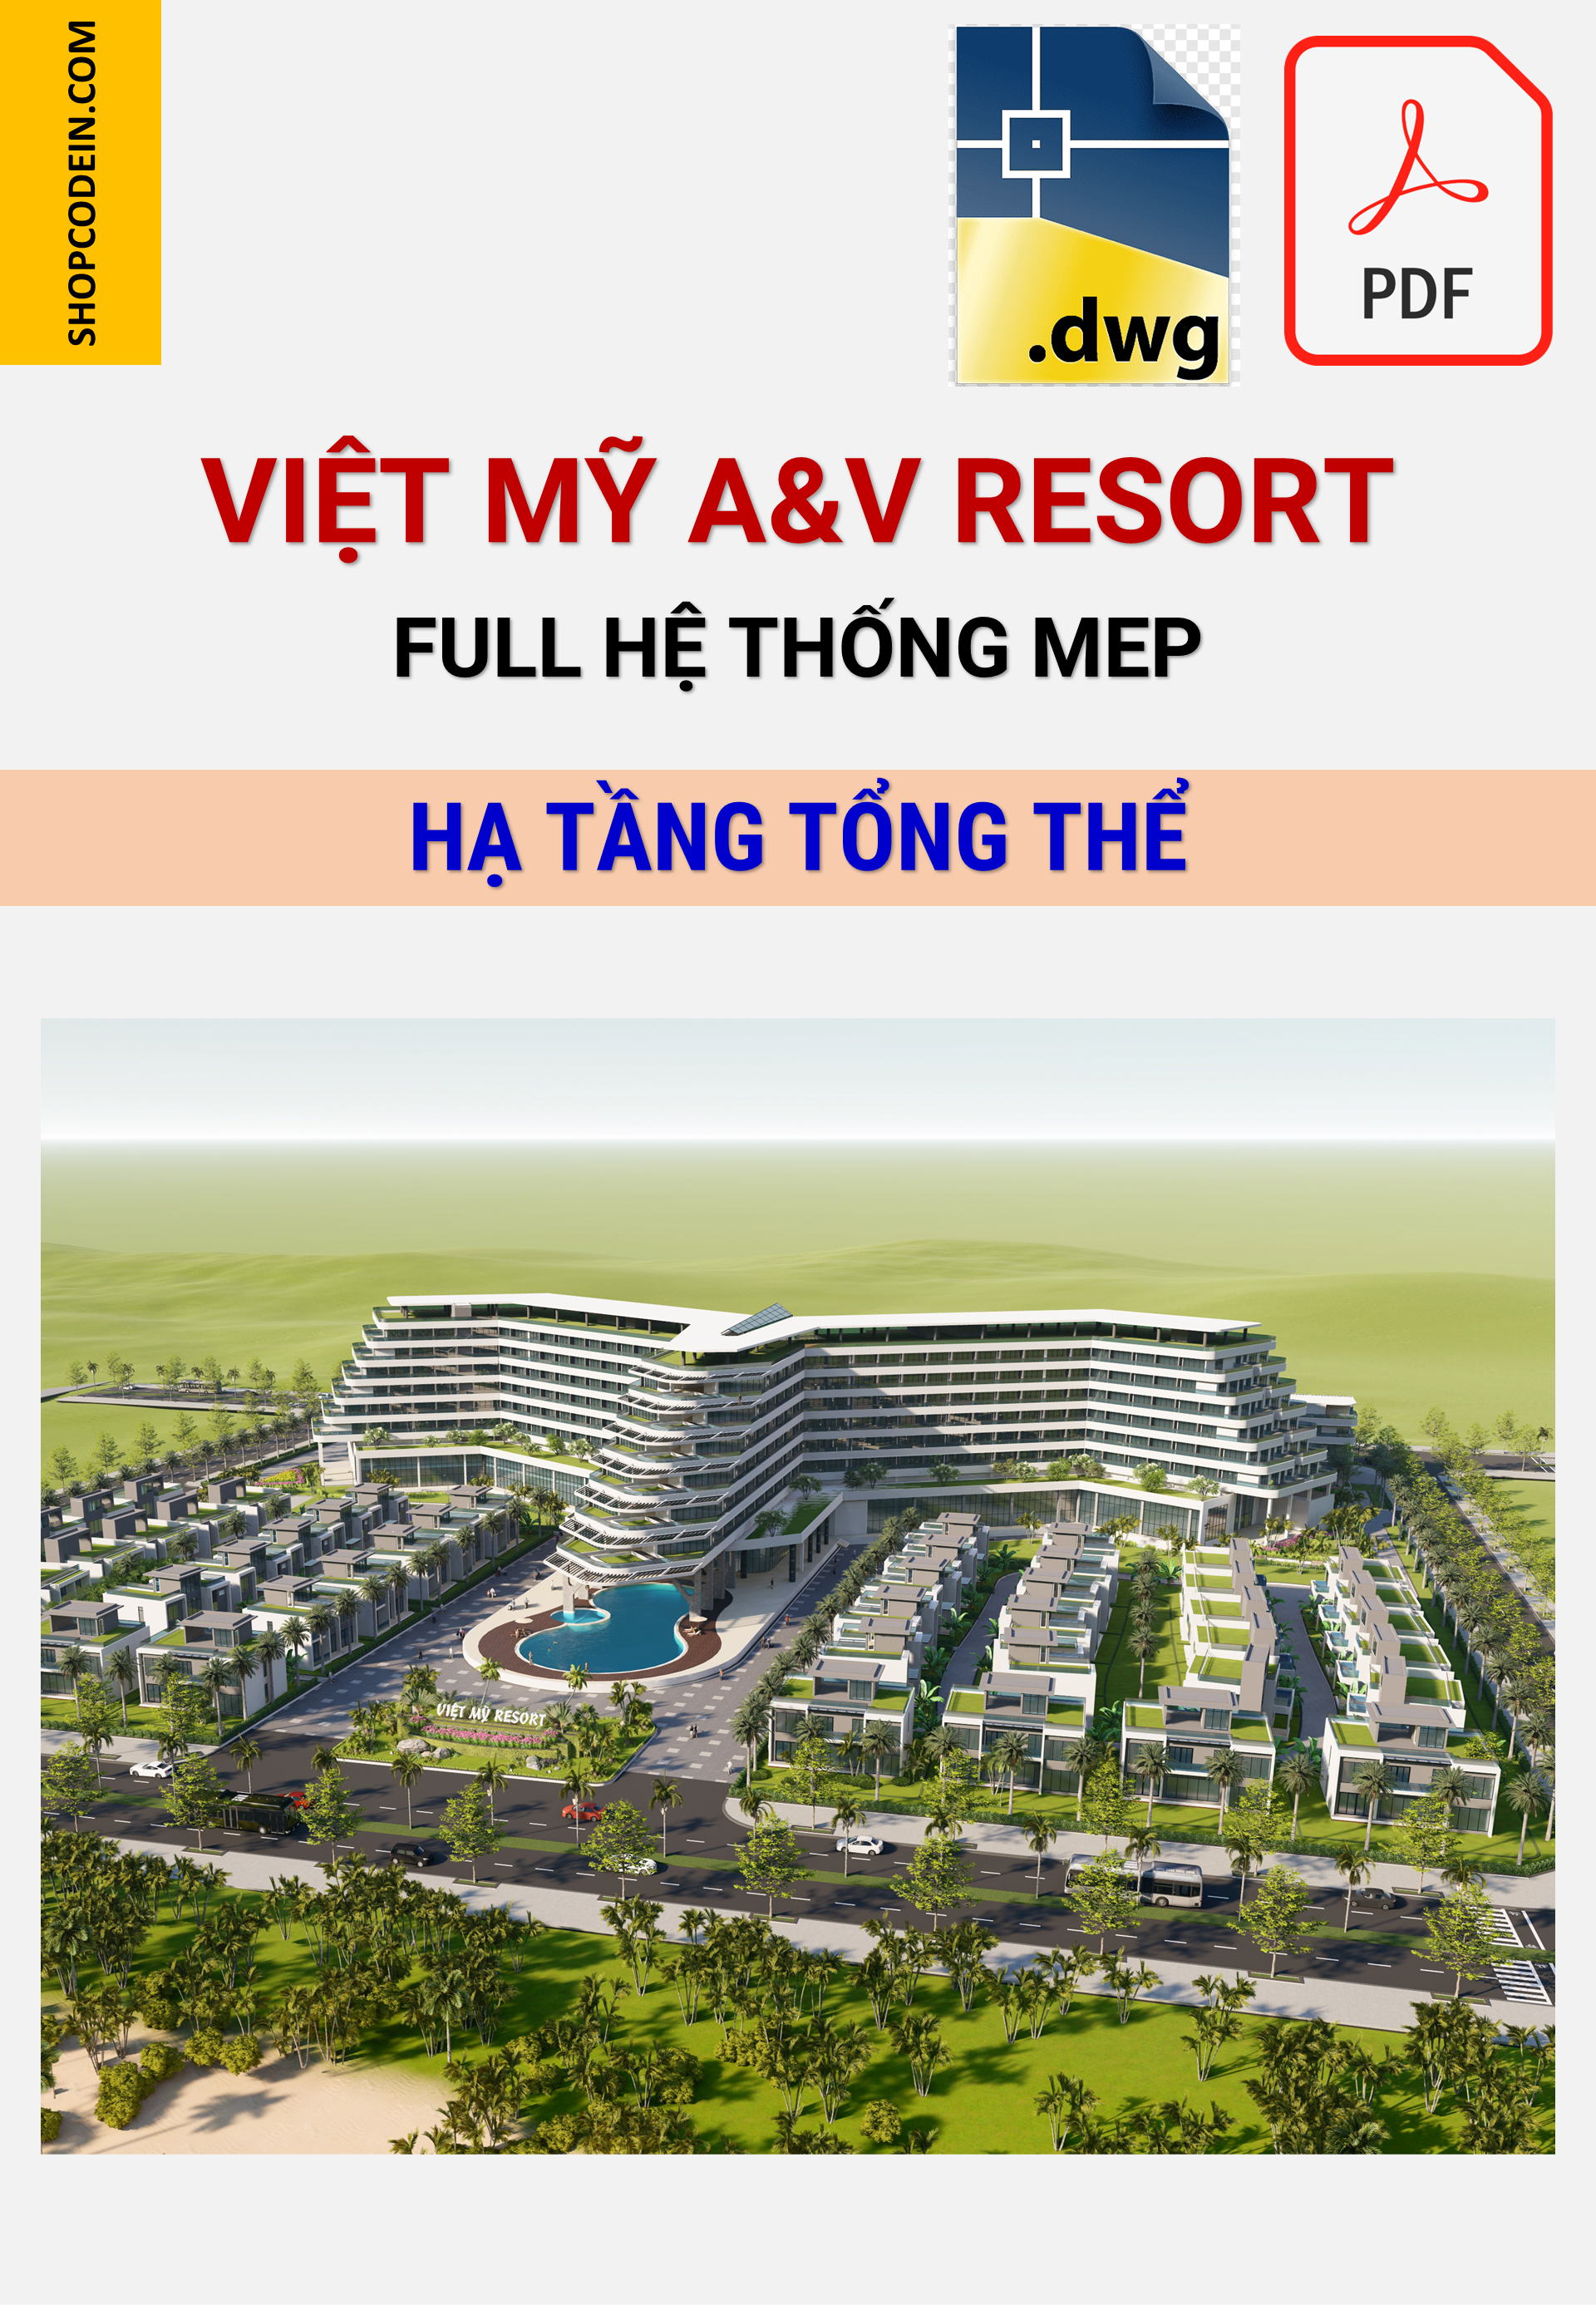 Khu Resort Việt Mỹ A&V | Hạ tầng tổng thể